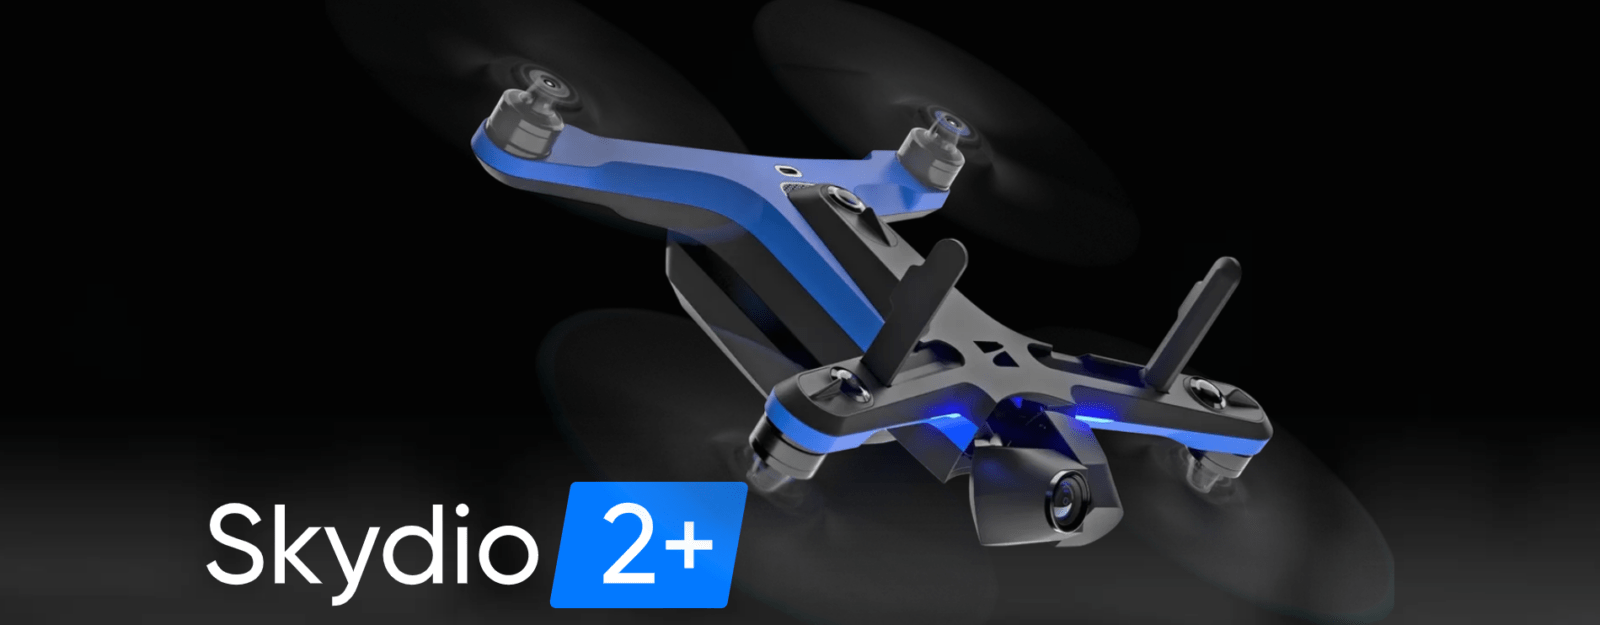 Компания Skydio представила дрон Skydio2+ c большей дальностью и временем полёта